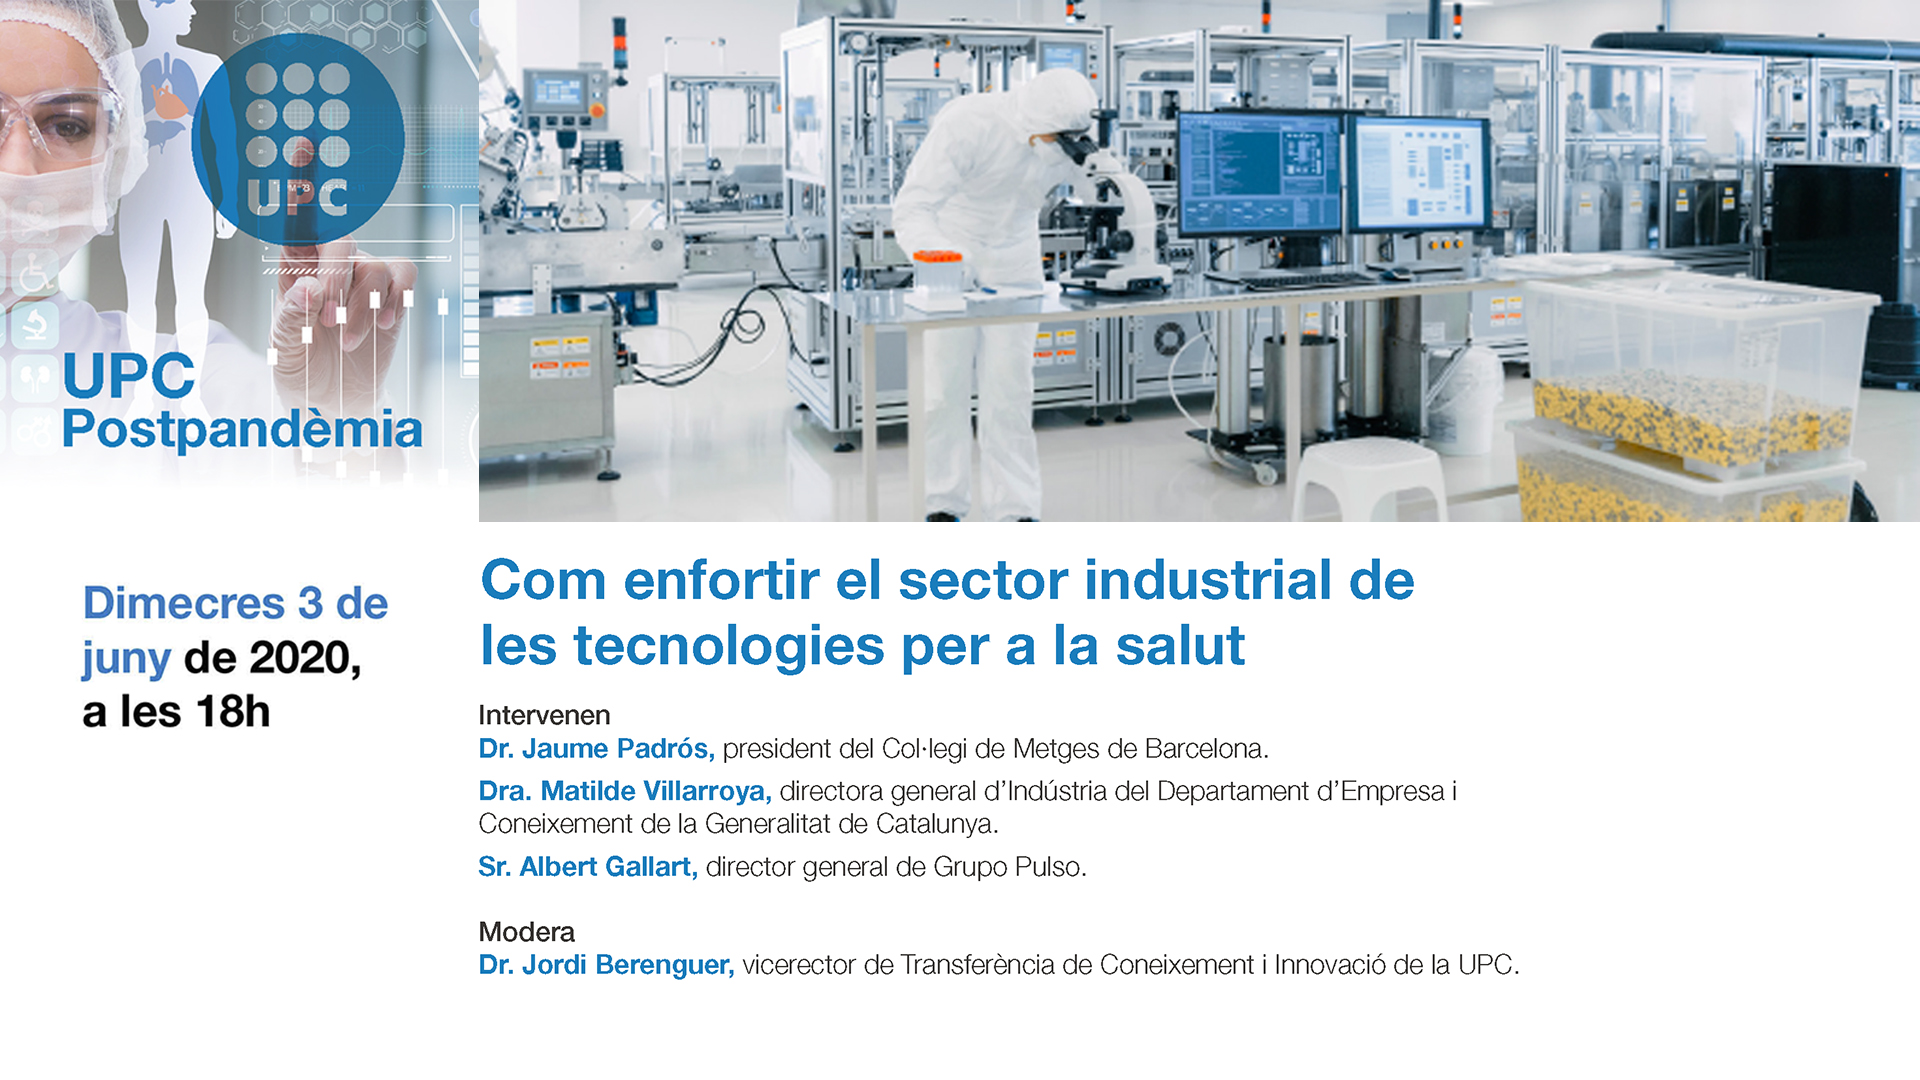 Com enfortir el sector industrial de les tecnologies per a la salut